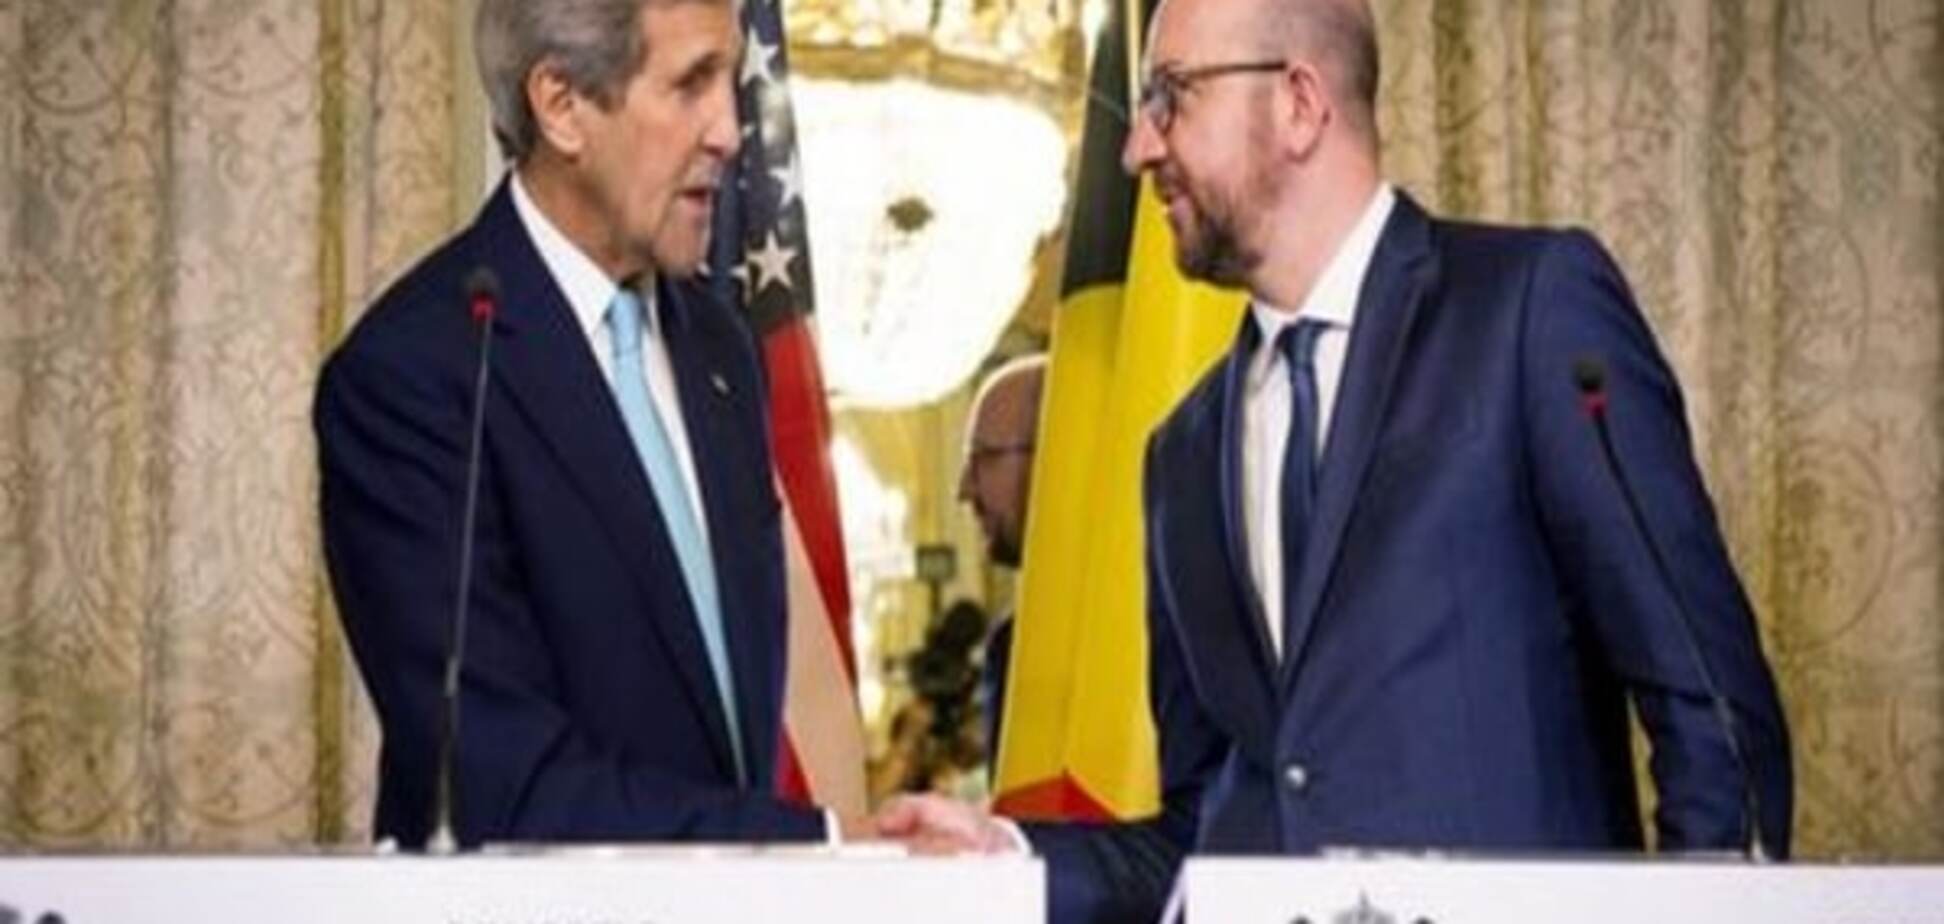 Керрі: США допоможуть Бельгії з обміном інформацією щодо терактів